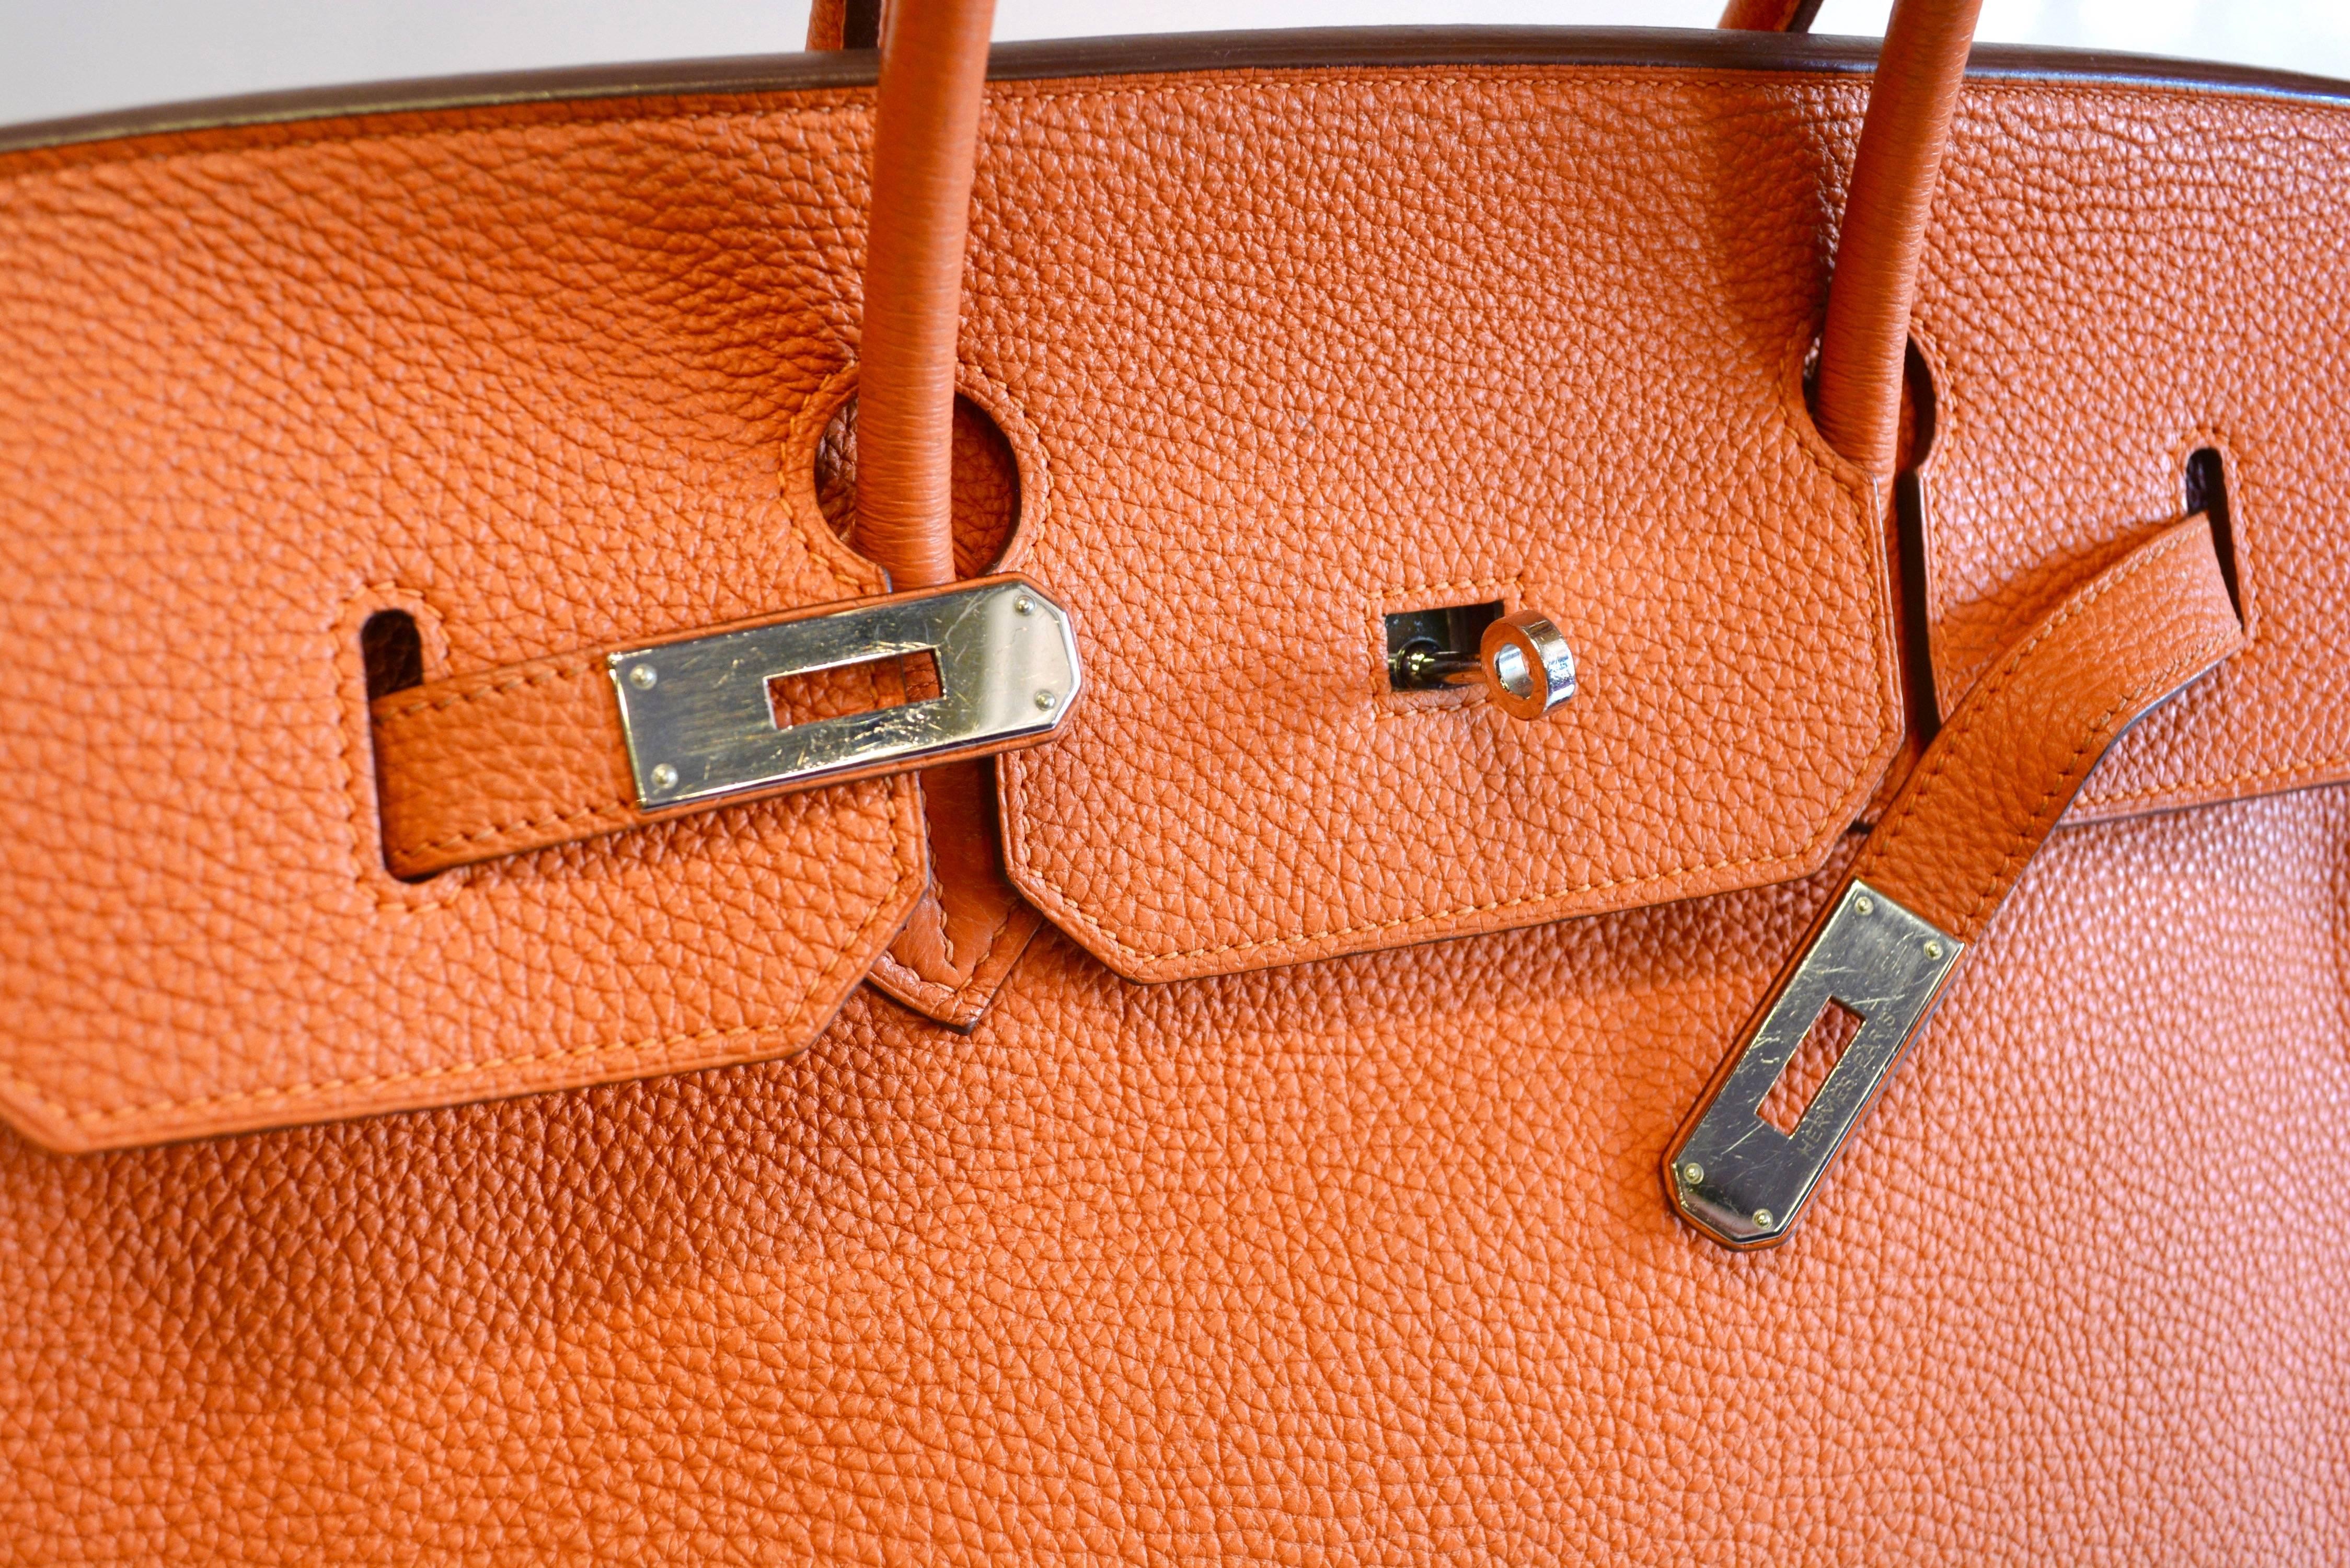 40 cm lange klassische Birkin-Tasche von Hermes in schönem orangefarbenem Togoleder.  Der Zustand ist sehr sauber mit minimalen Abnutzungserscheinungen am Griff, der eventuell gereinigt werden muss. Das Innere ist sauber und die Karosserie sehr gut.